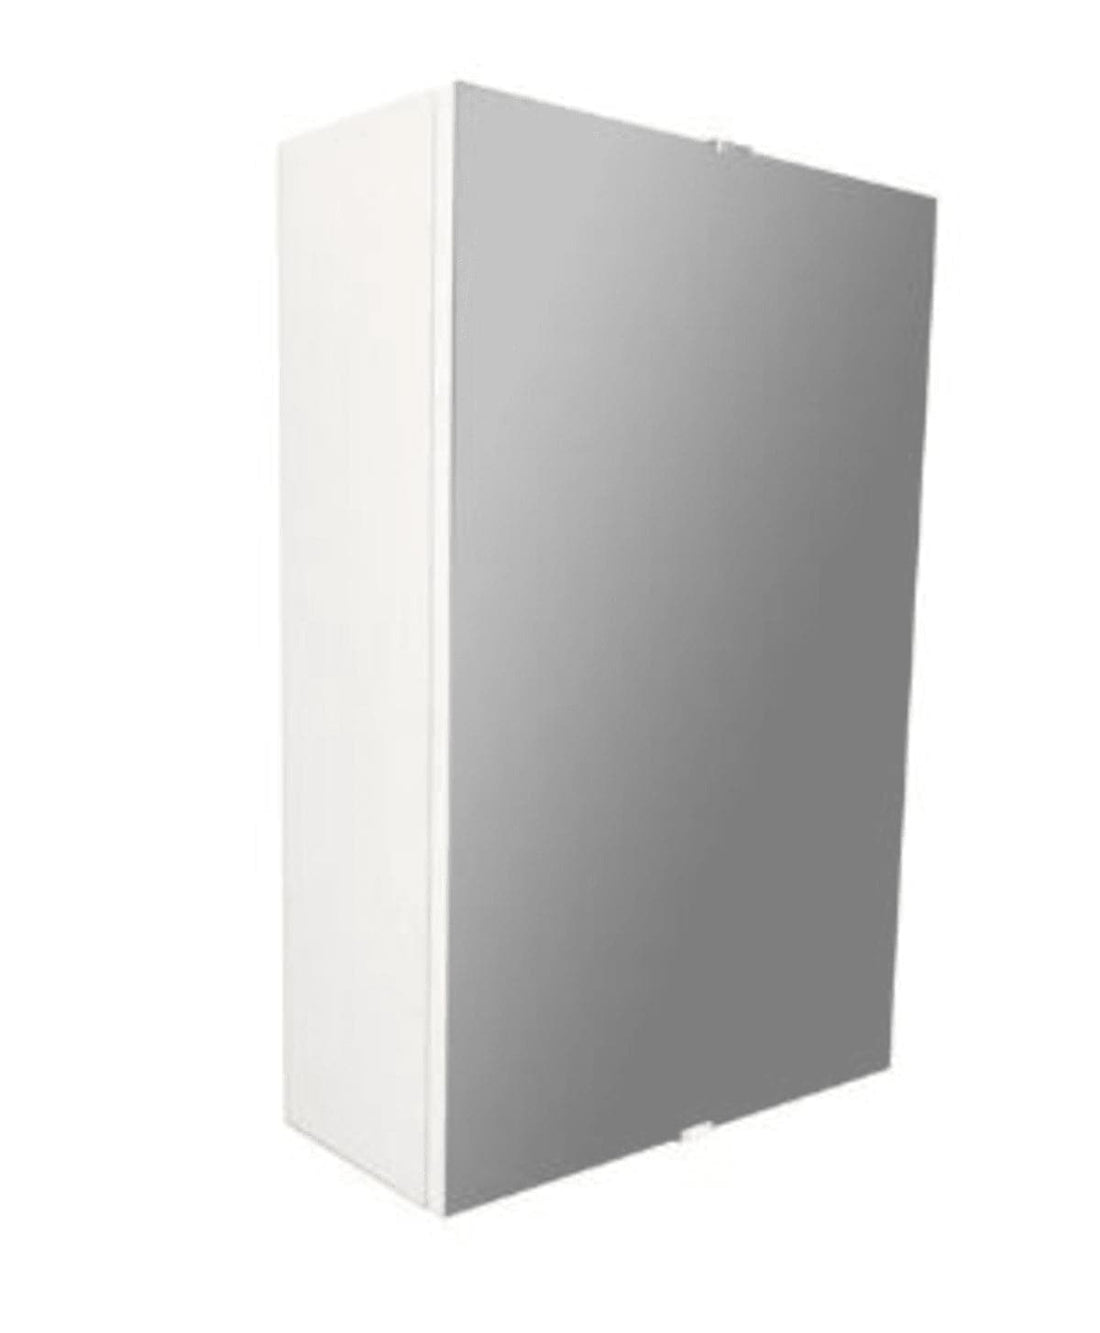 ESSENTIAL MIRROR 1 DOOR W 38 D 17 H 58 CM WHITE - best price from Maltashopper.com BR430005173